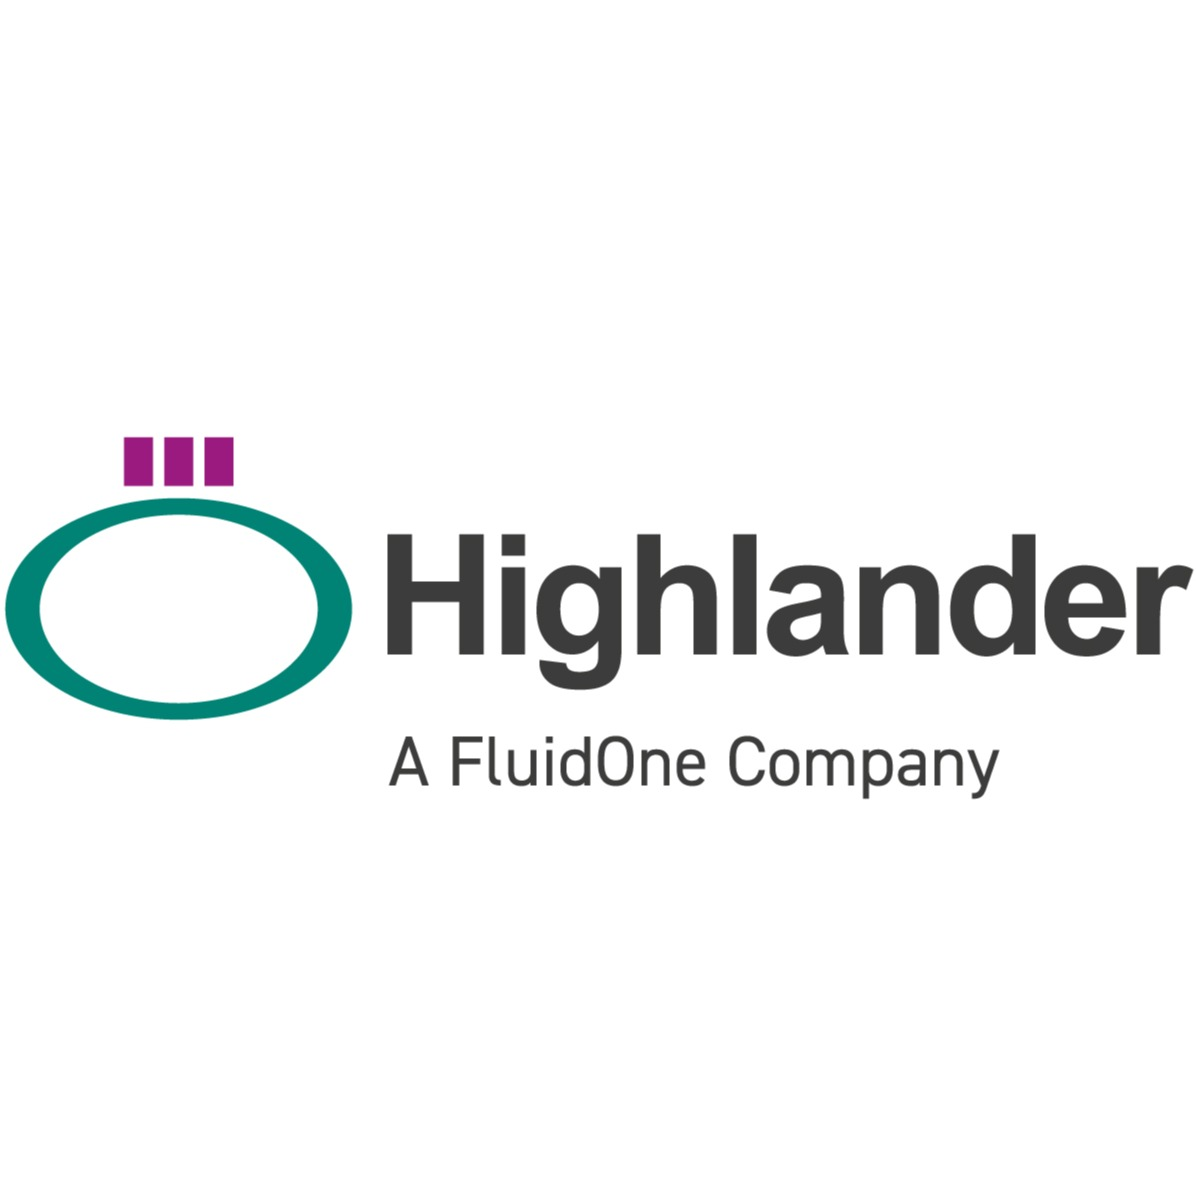 Highlander Digital Infrastructure Employer Skills Academy